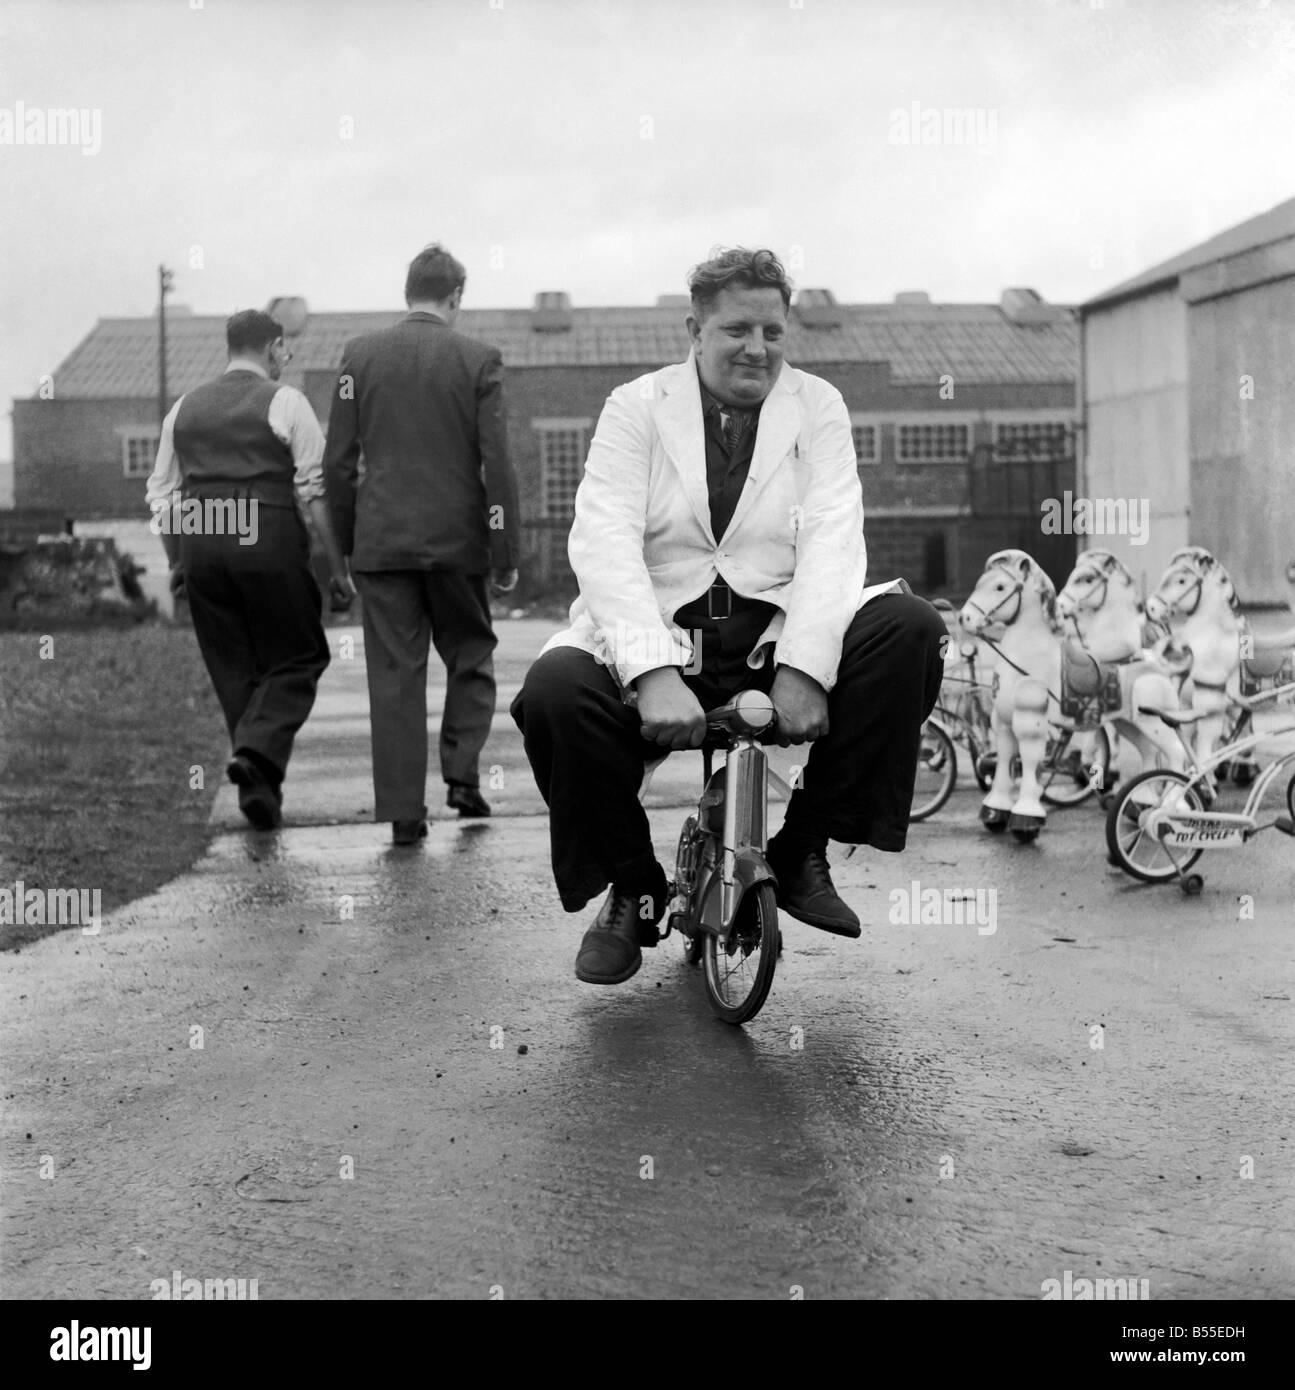 hombre-probando-los-juguetes-para-ninos-bicicletas-y-caballos-de-balanceo-de-diciembre-de-1953-d7321-b55edh.jpg